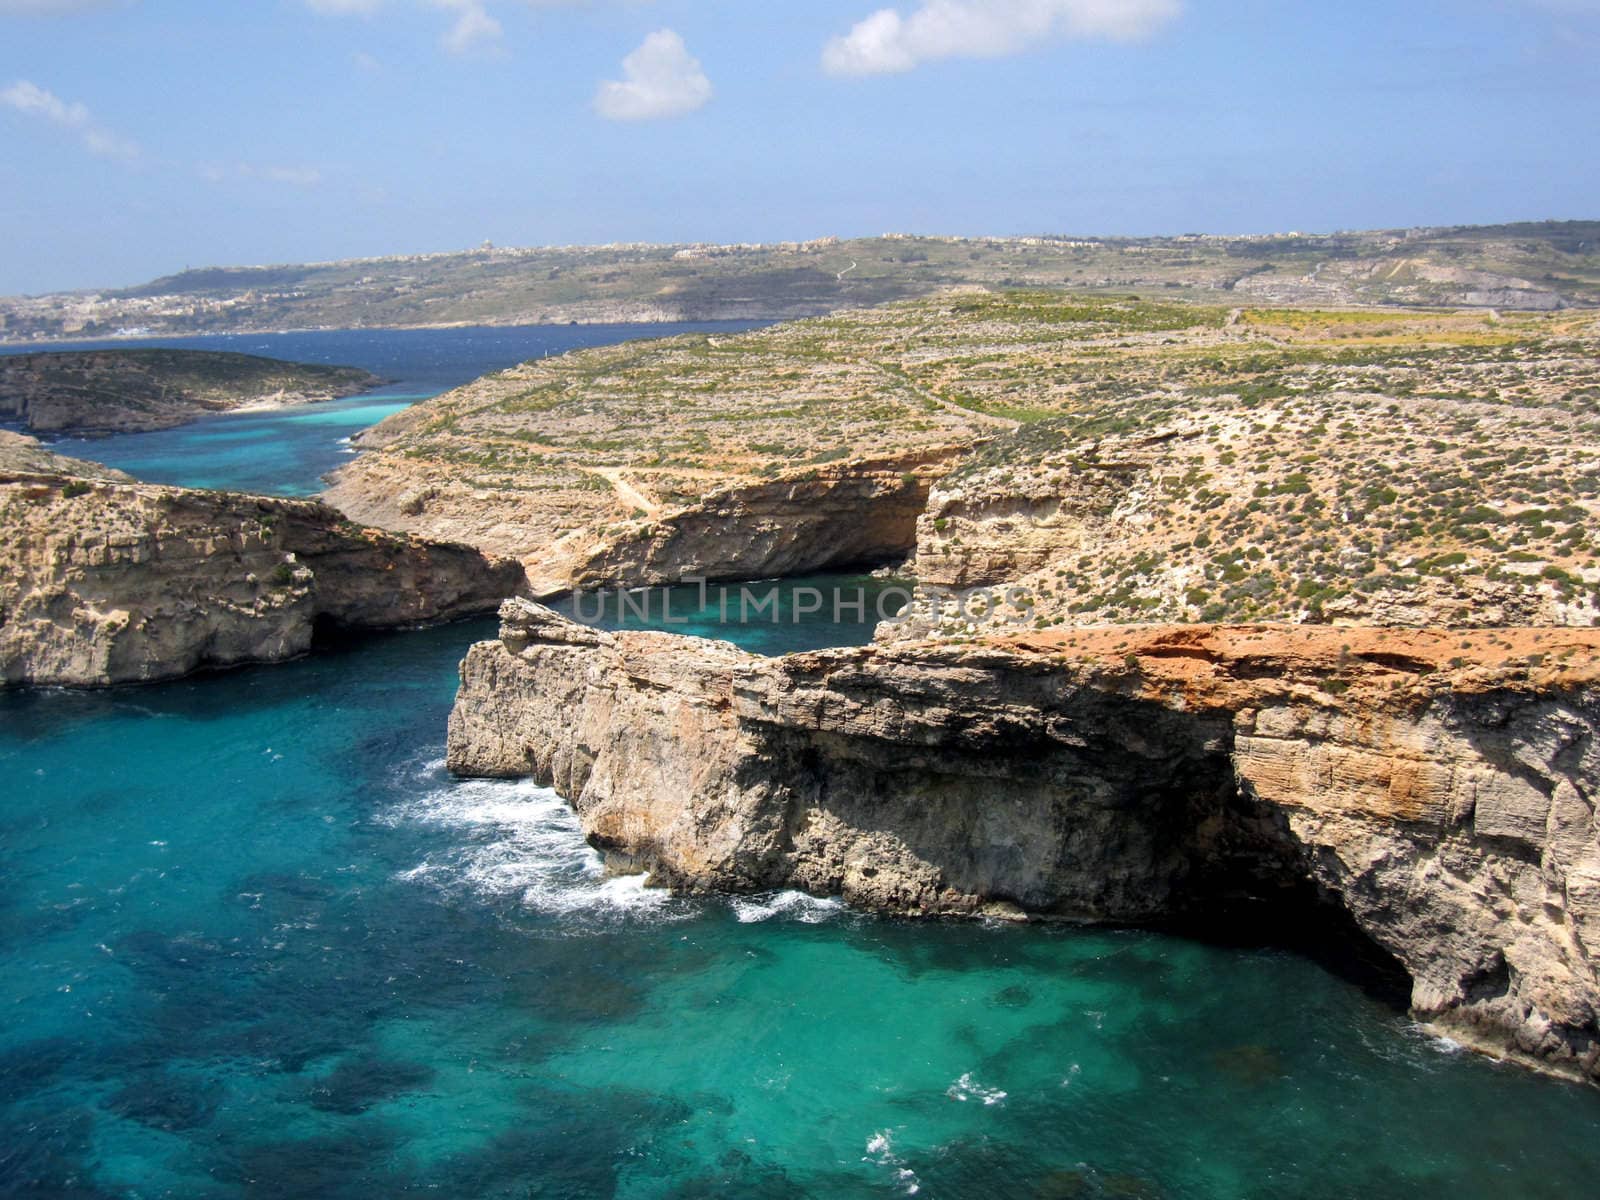 The Blue Lagoon in Comino, Malta.